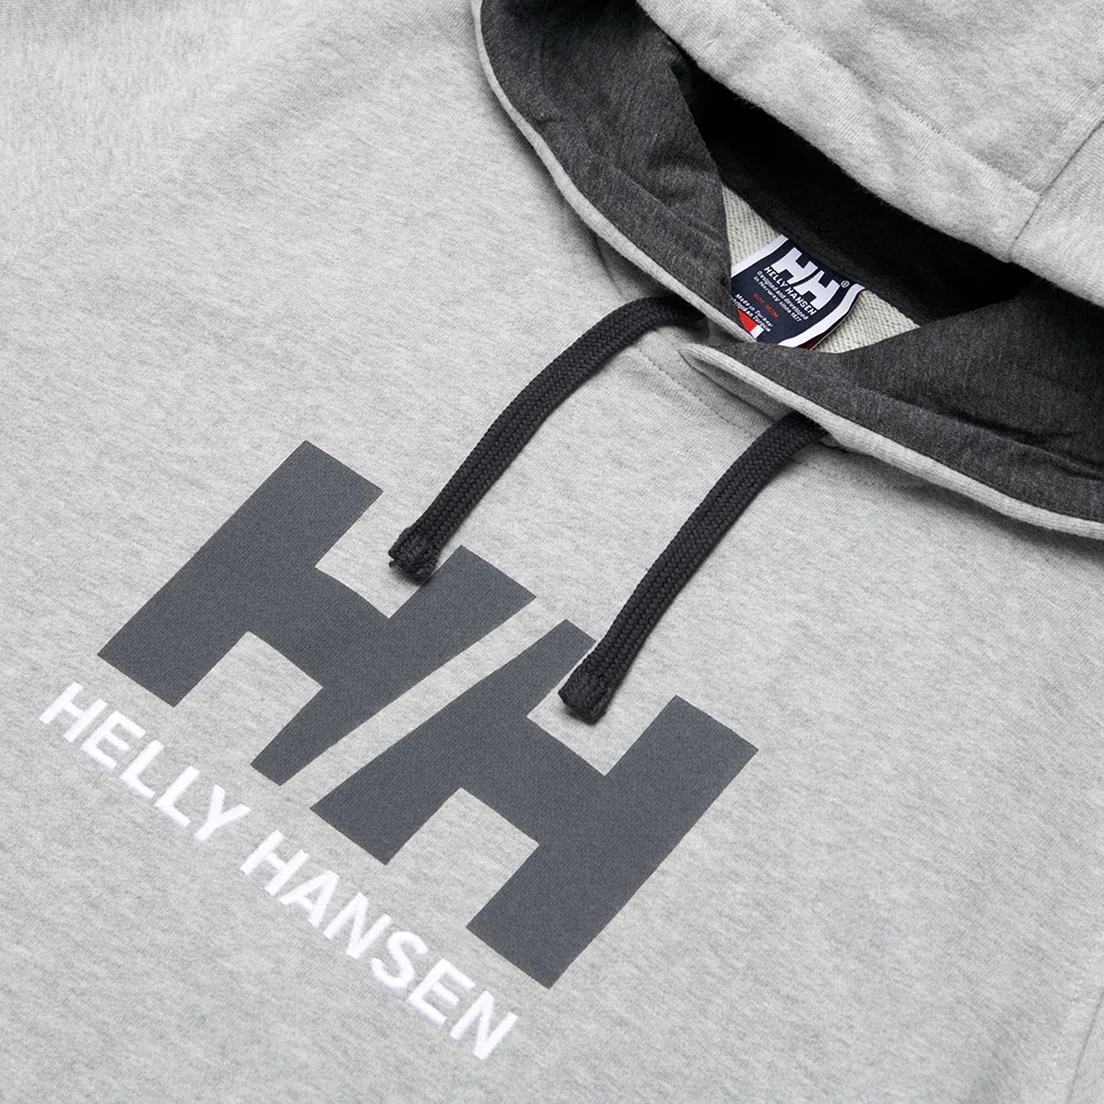 Логотип Helly Hansen на нашивке